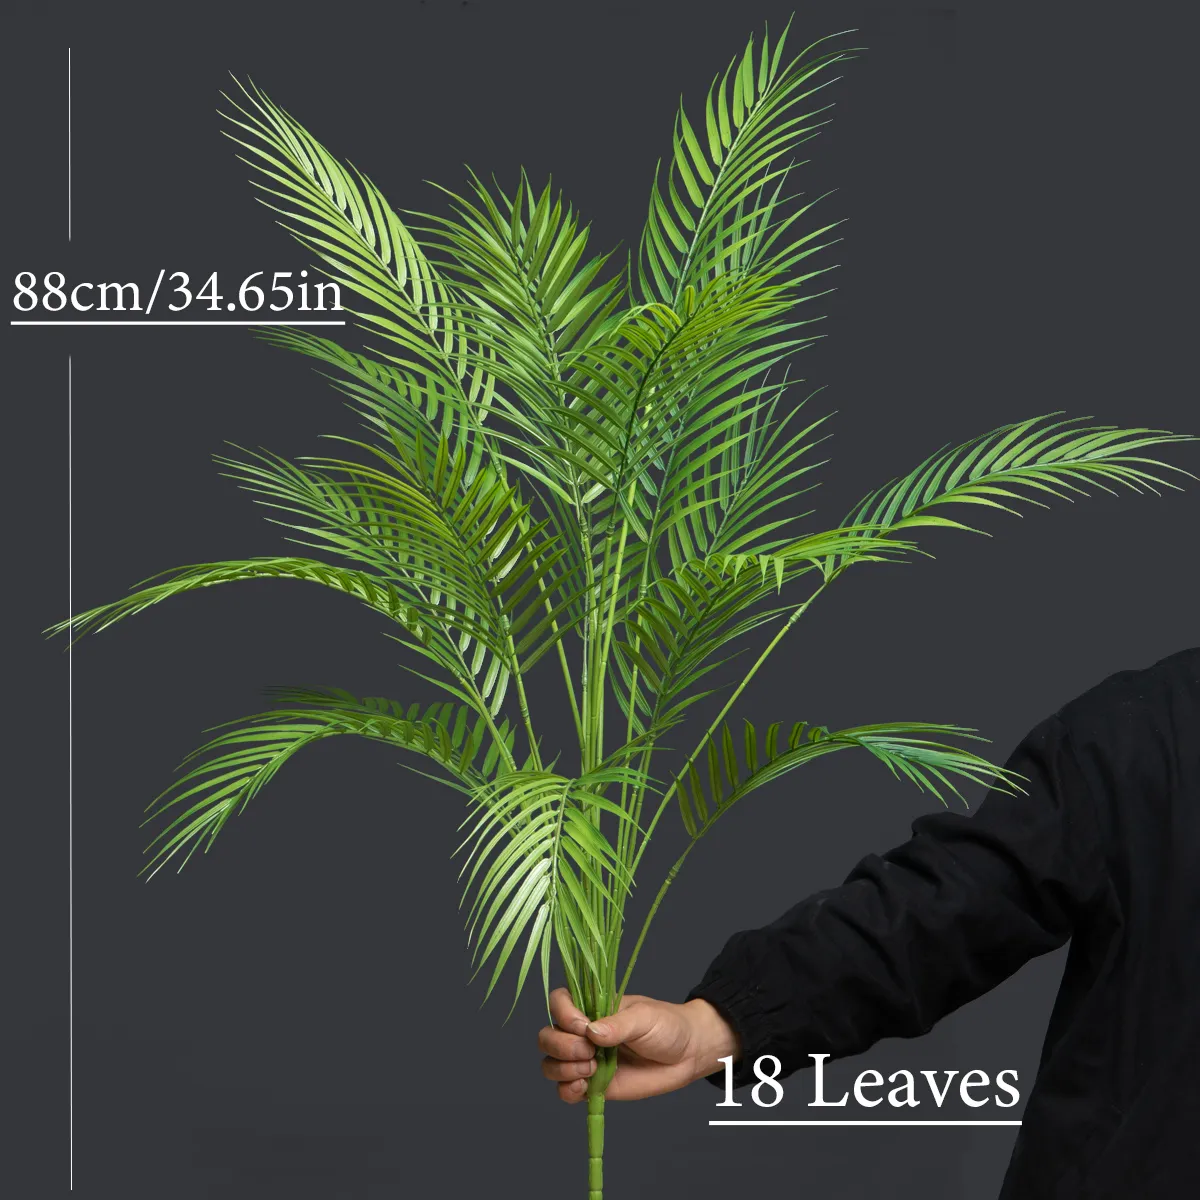 Plantas de Palma artificiales grandes, hojas de helecho de plástico Monstera falsas, hojas de palma grandes, ramas para decoración de fiesta de jardín en casa, 88cm, 18 tenedores